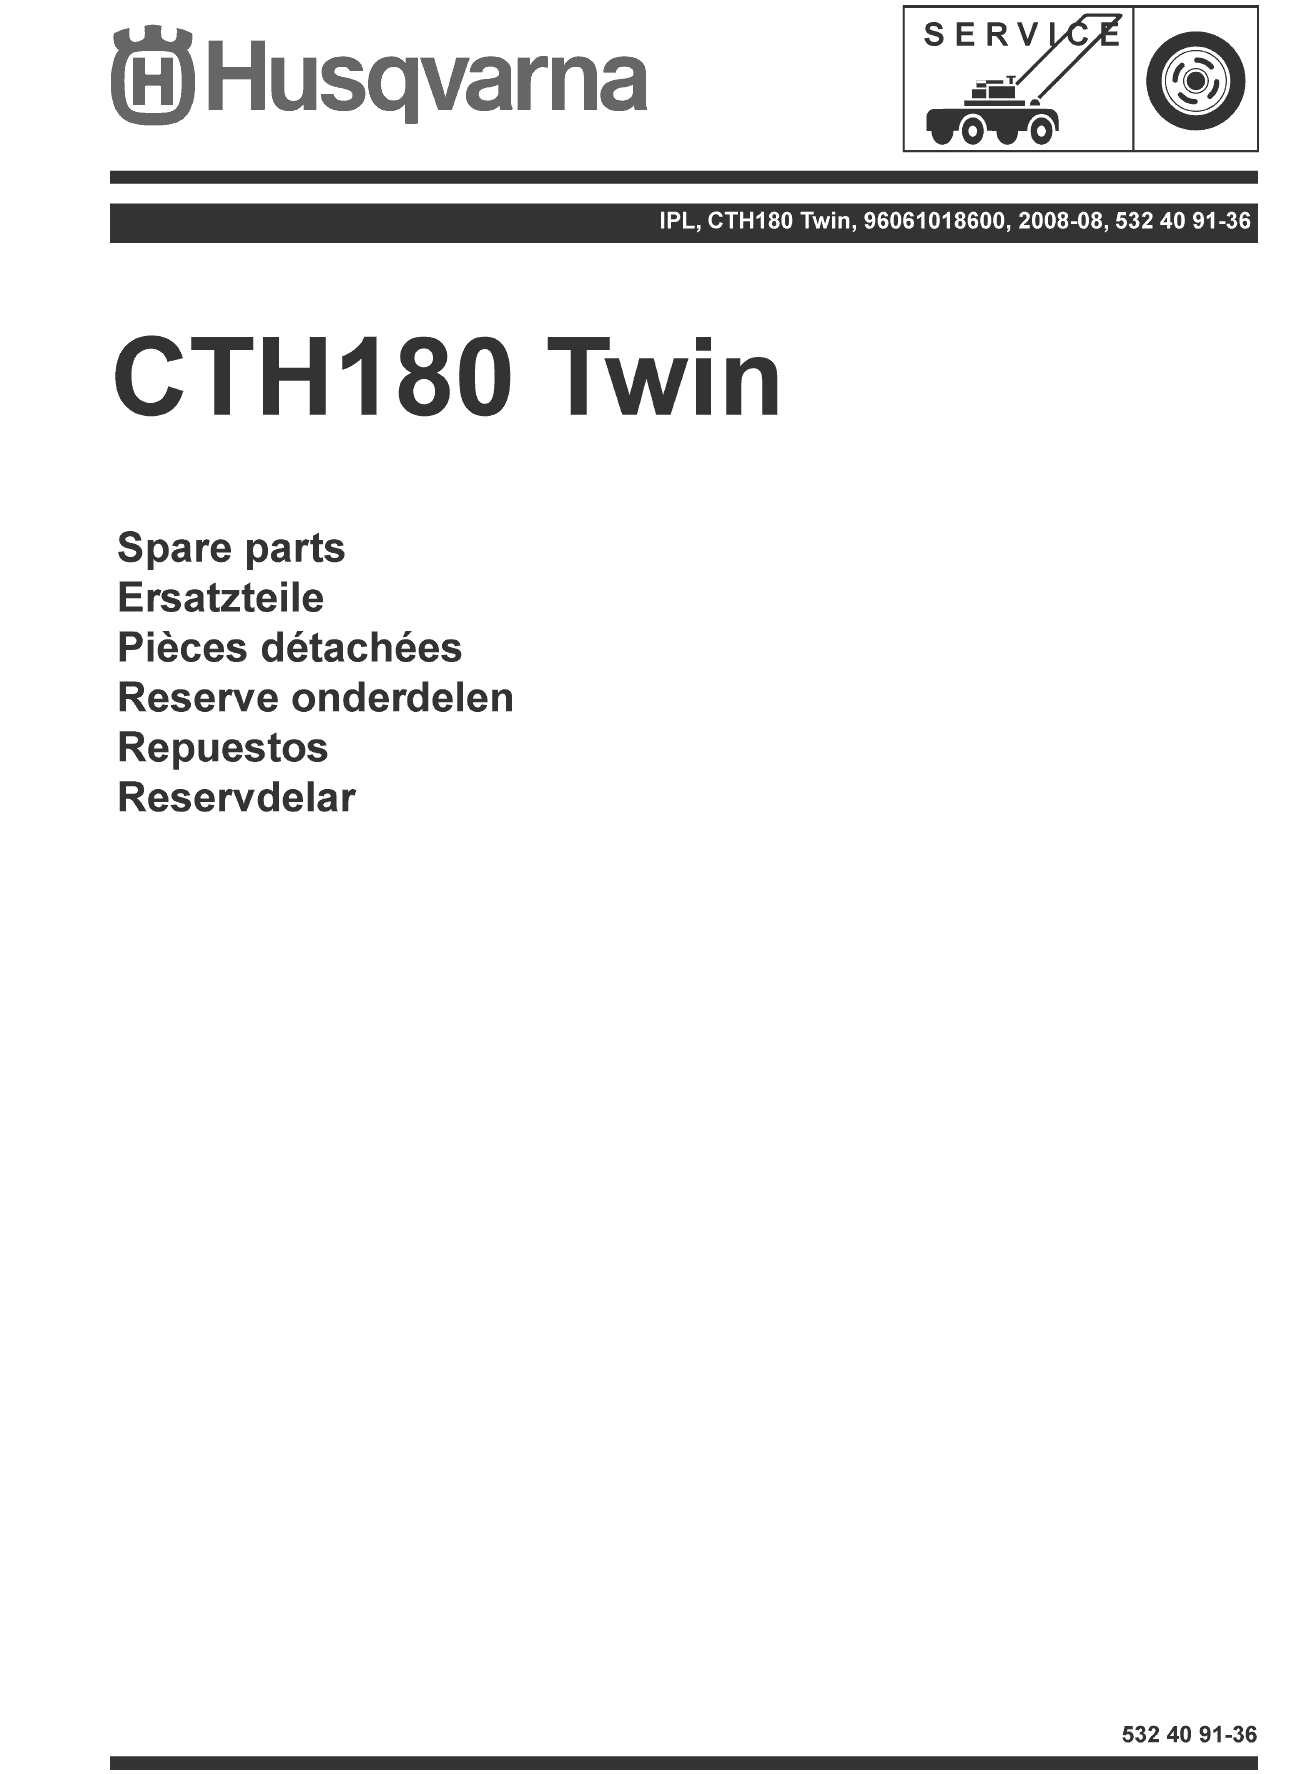 Husqvarna CTH180 Twin (2008-08) (96061018600)